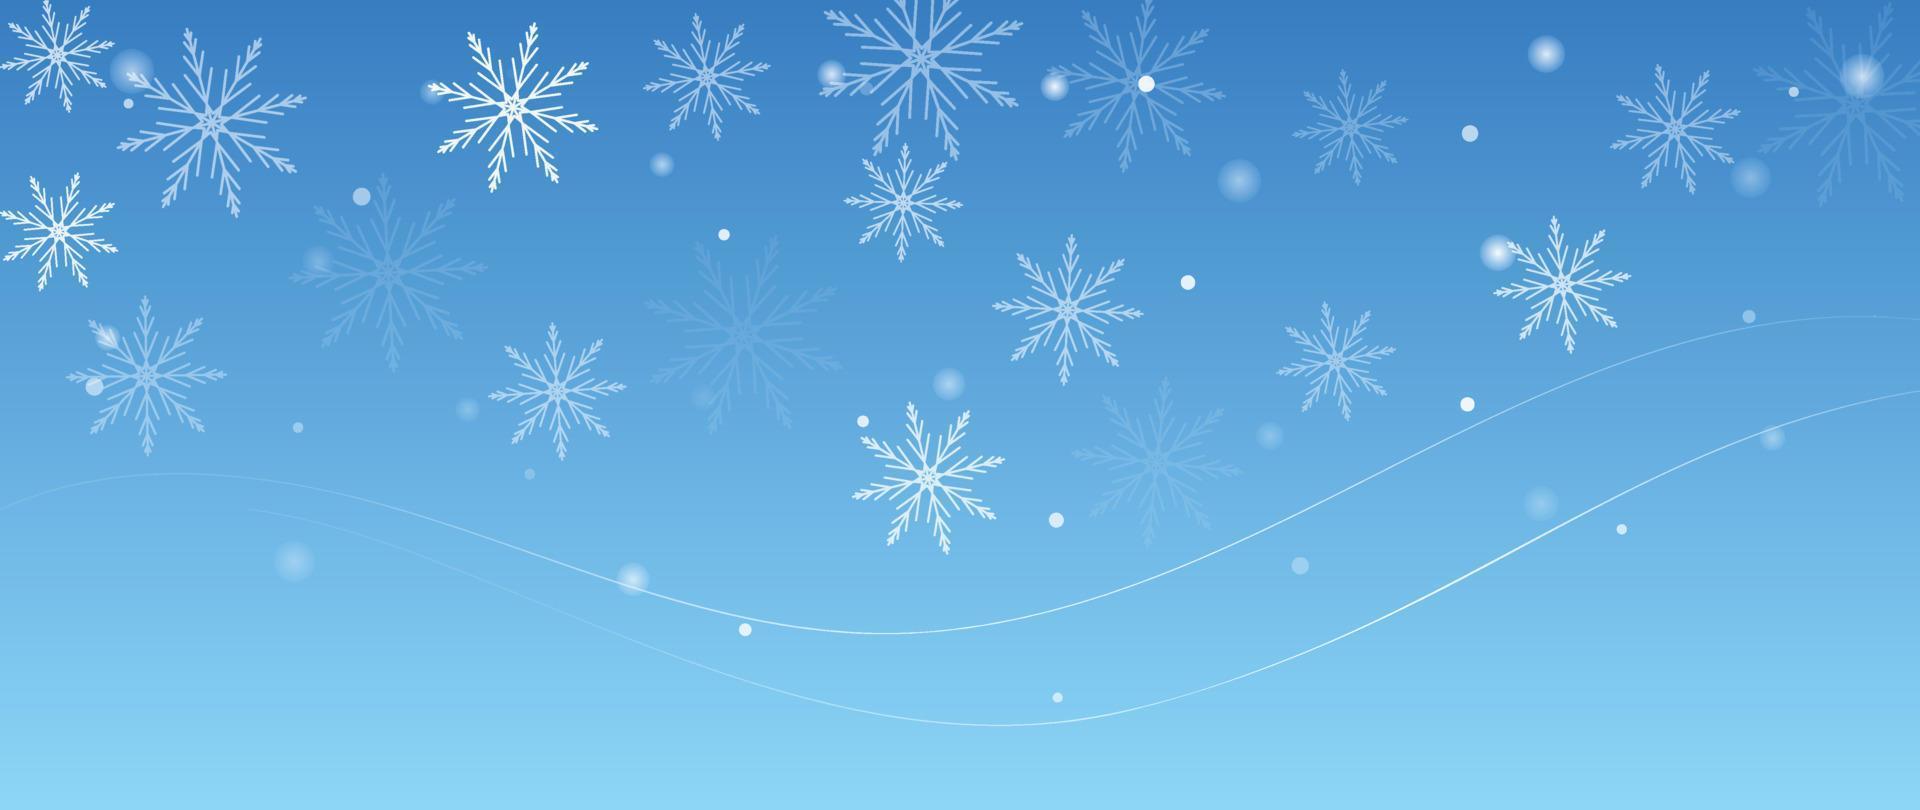 elegant winter sneeuwvlok achtergrond vector illustratie. luxe decoratief sneeuwvlok en fonkeling Aan licht blauw achtergrond. ontwerp geschikt voor uitnodiging kaart, groet, behang, poster, spandoek.